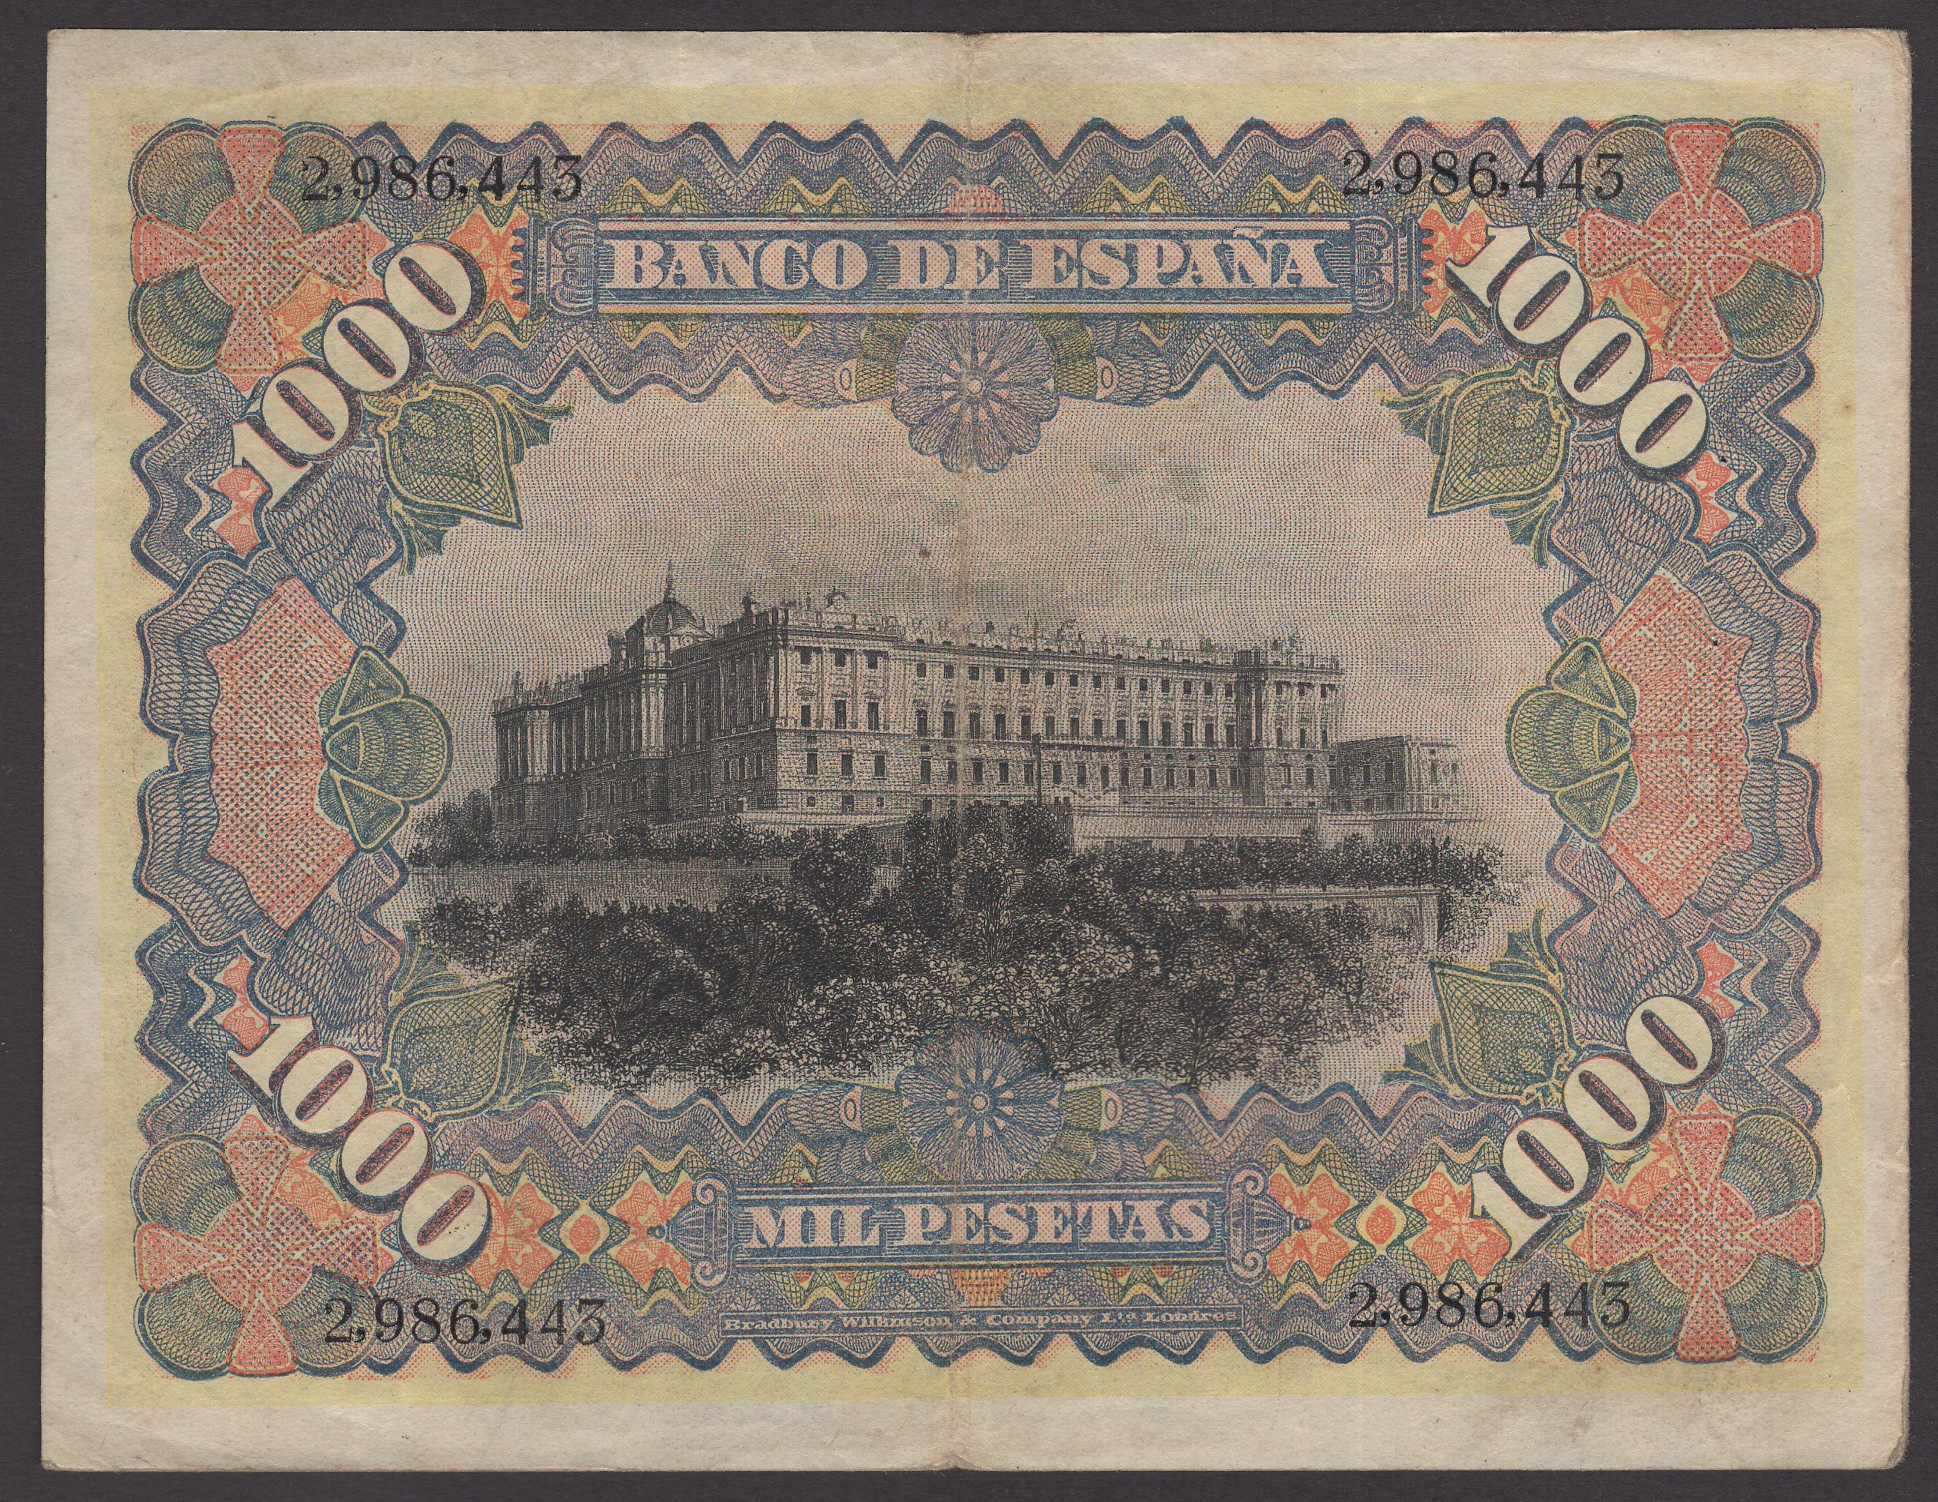 Banco de Espana, 1000 Pesetas, 15 July 1907, serial number 2986443, good very fine,... - Image 2 of 2